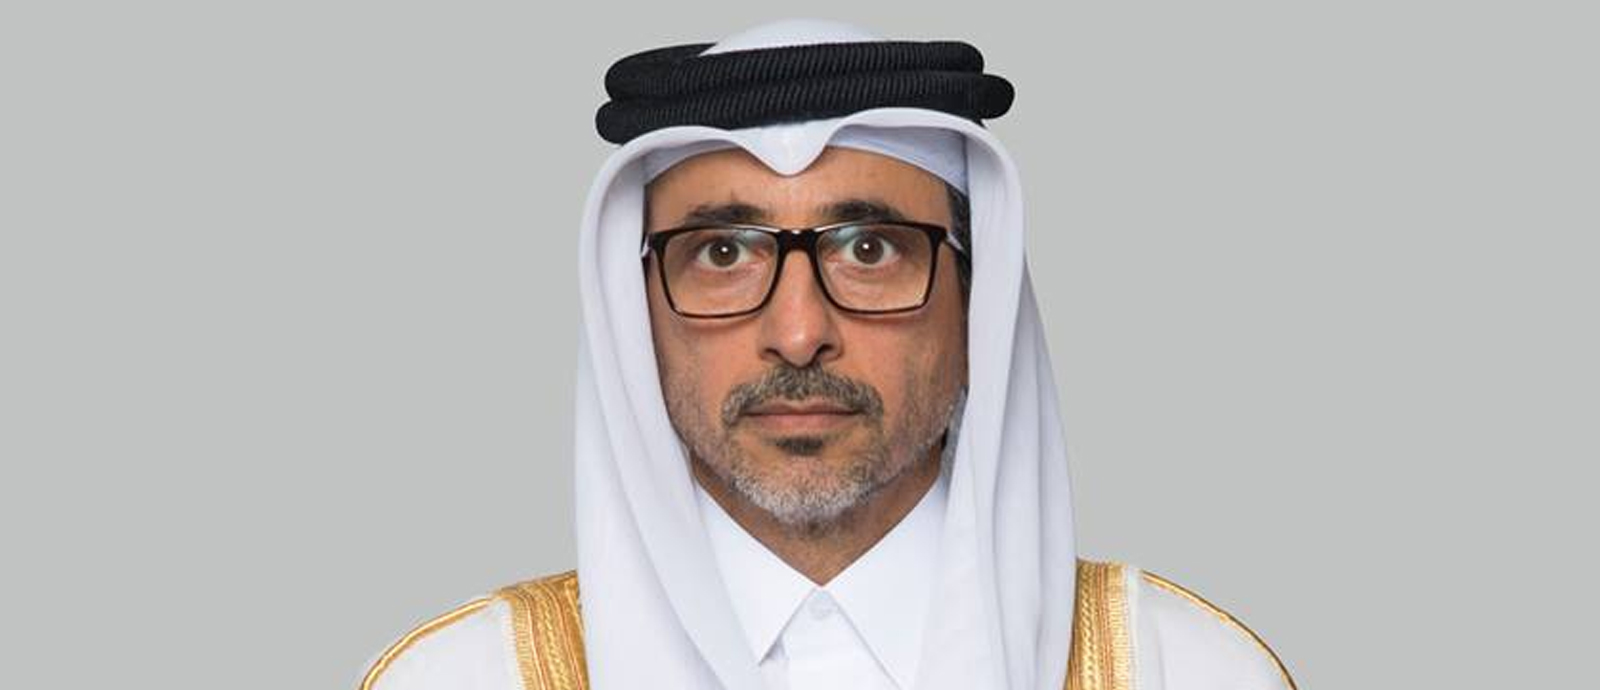 HE Minister of Sports and Youth Salah bin Ghanim Al Ali